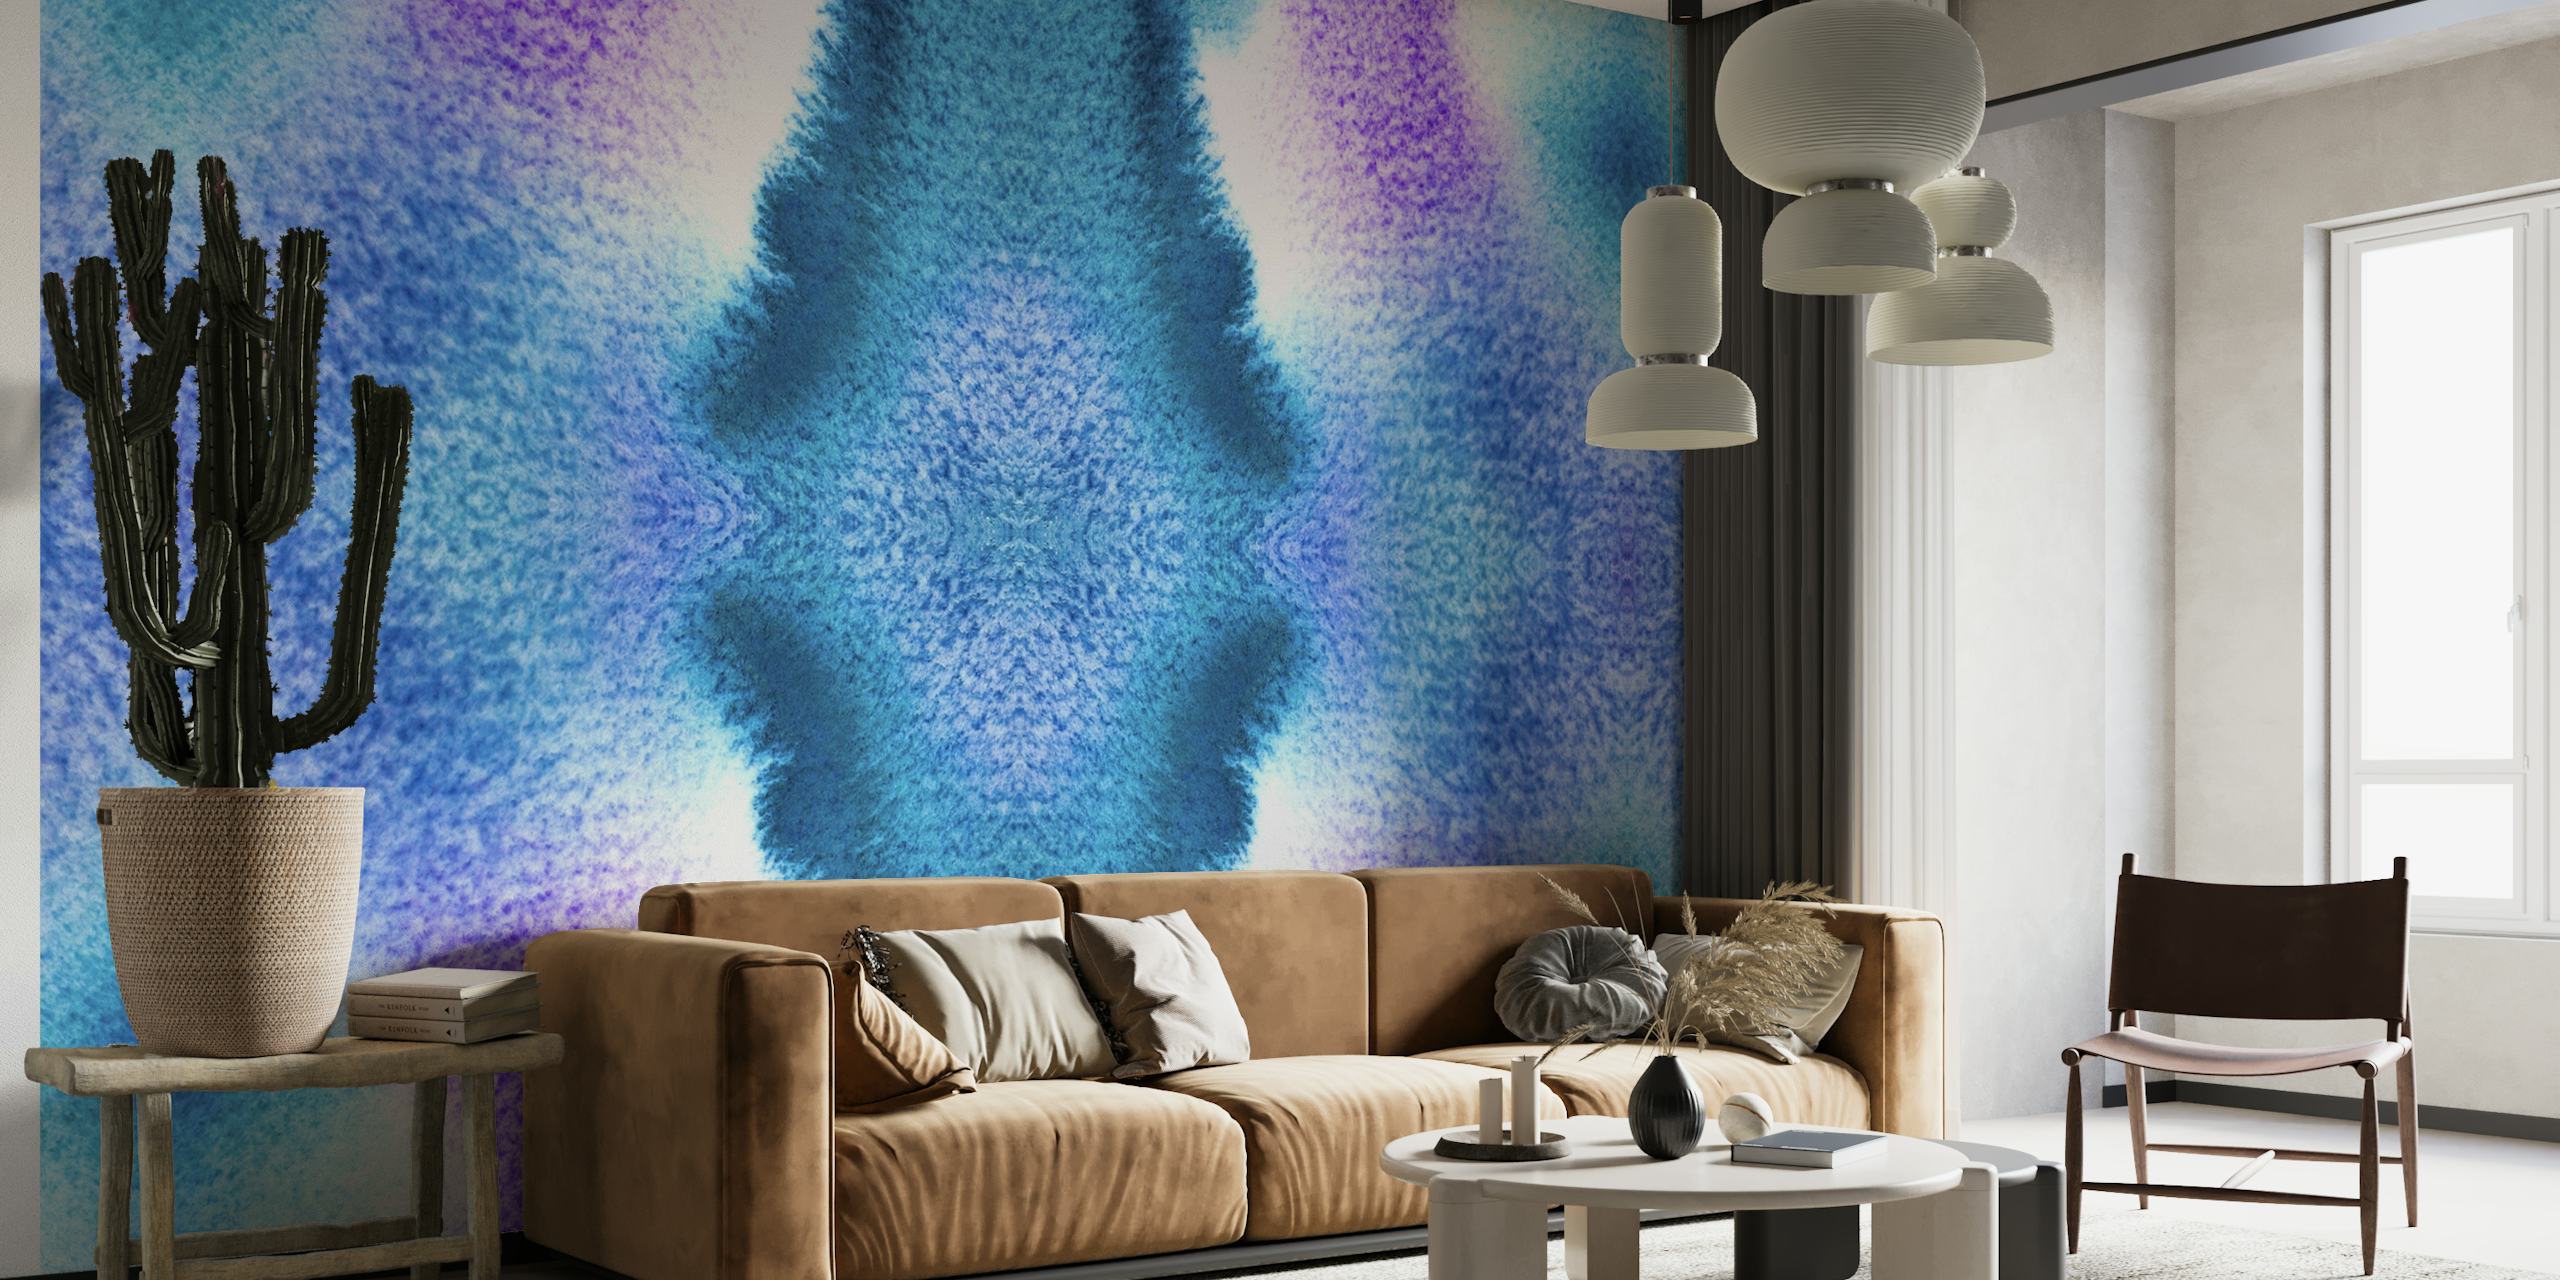 Tie-dye-patroon in turquoise en paarse tinten muurschildering